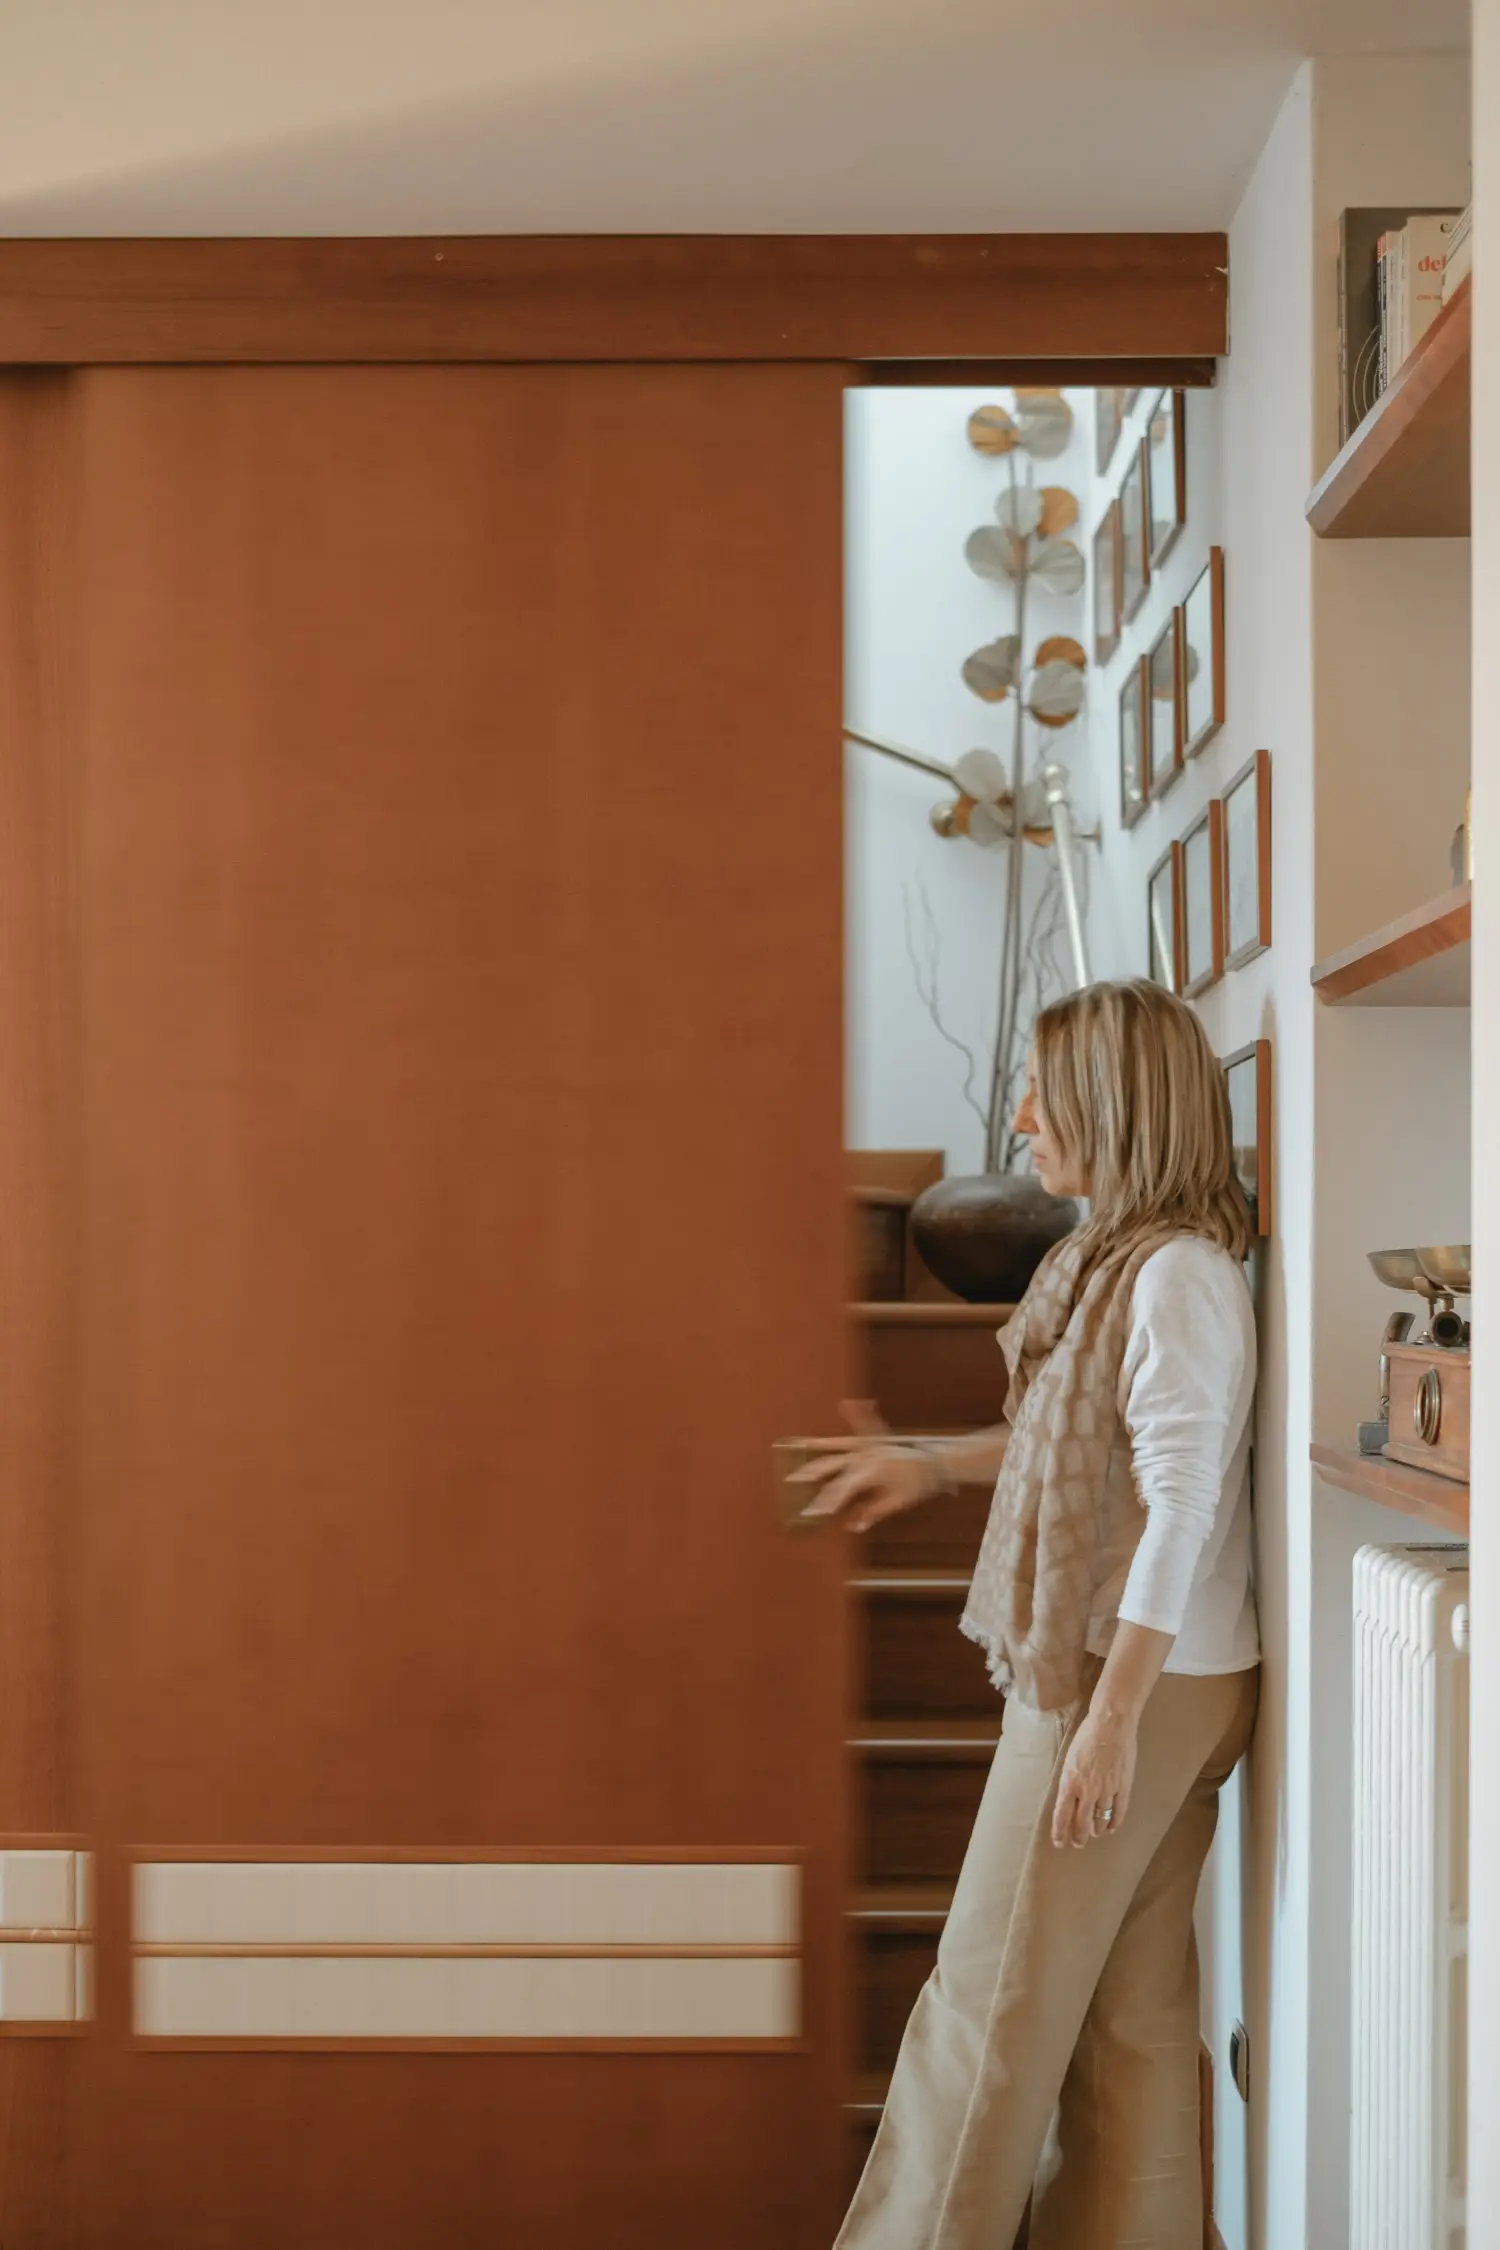 Stefania Luraghi, fondatrice dello studio Elles Interior Design, viene ritratta in piedi di fronte a un pannello divisorio scorrevole da lei progettato.